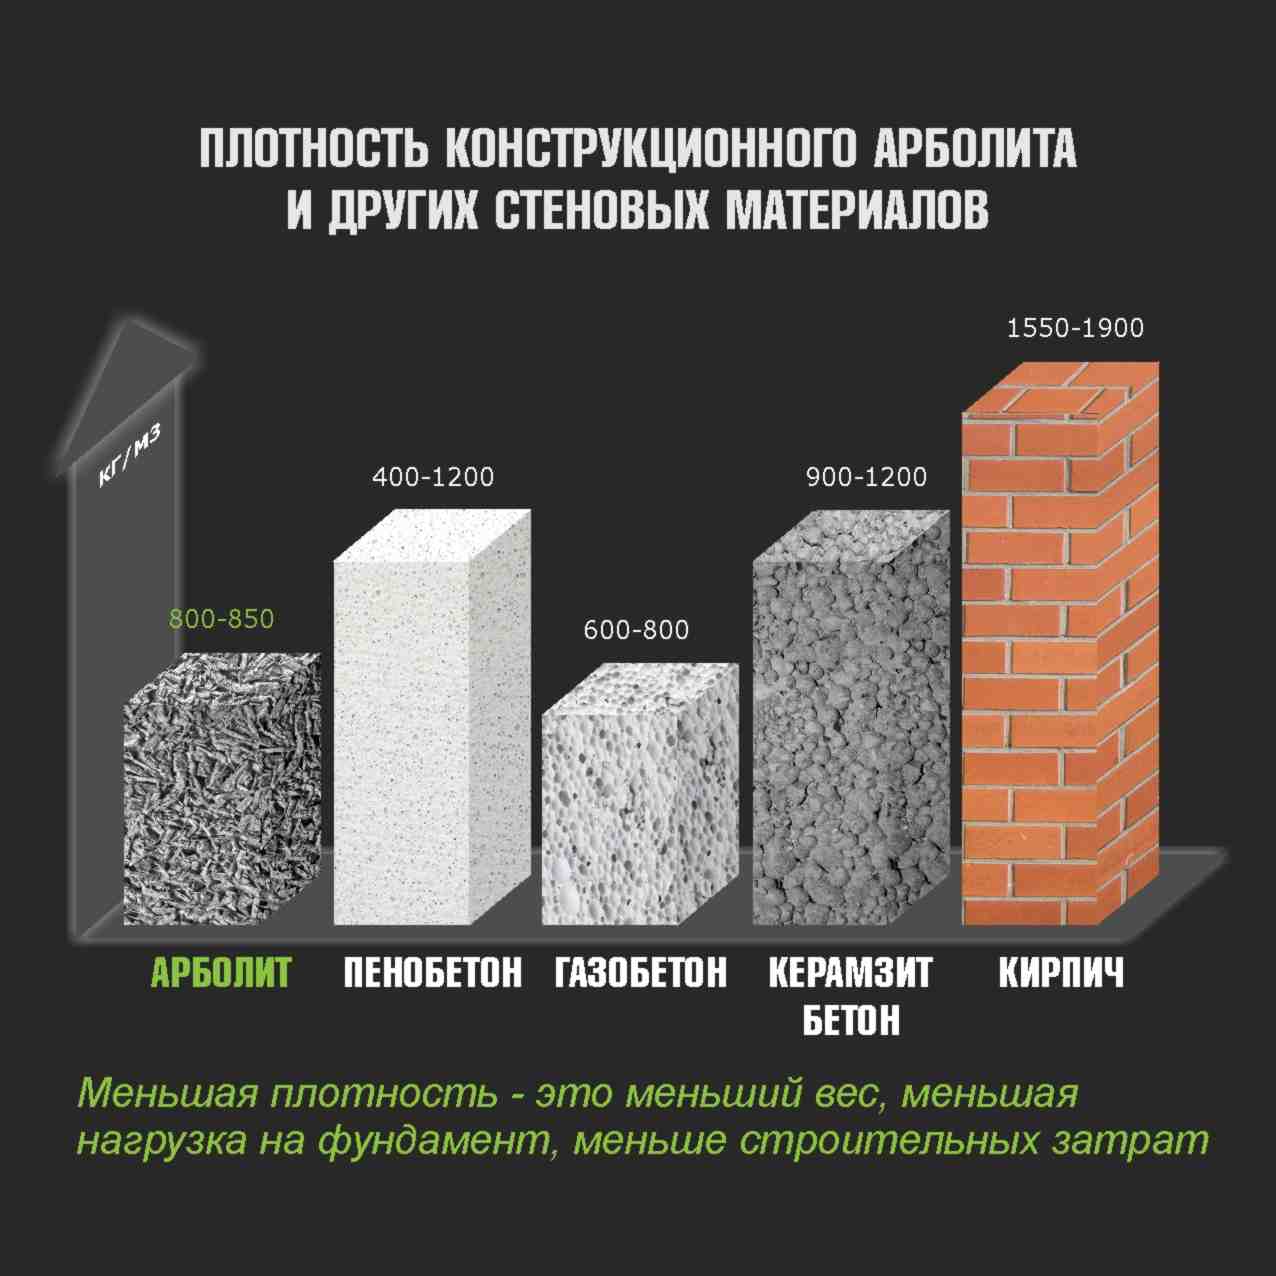 Керамический блок или газобетон: что лучше выбрать для строительства дома